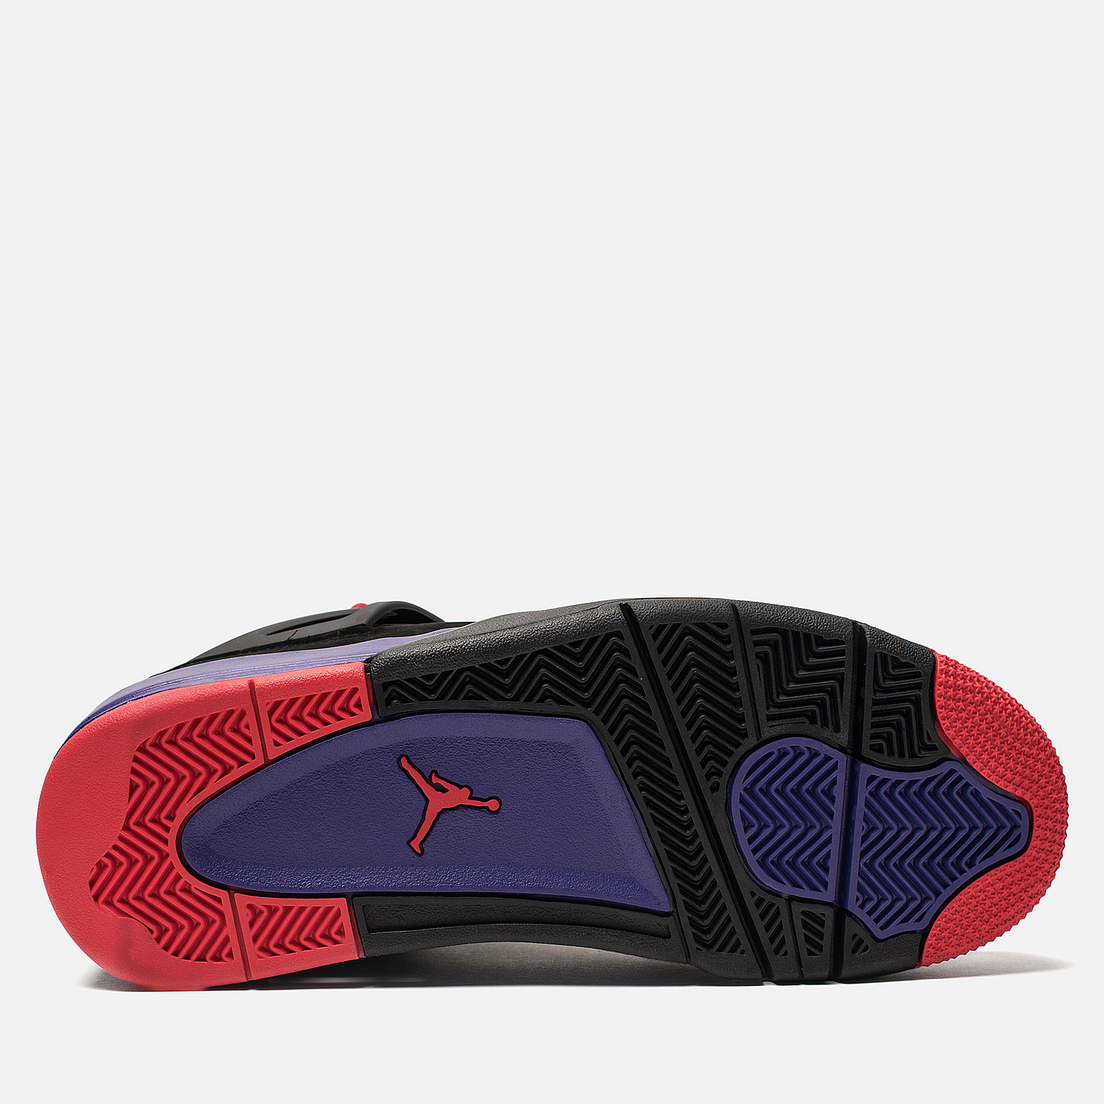 Jordan Мужские кроссовки Air Jordan 4 Retro NRG